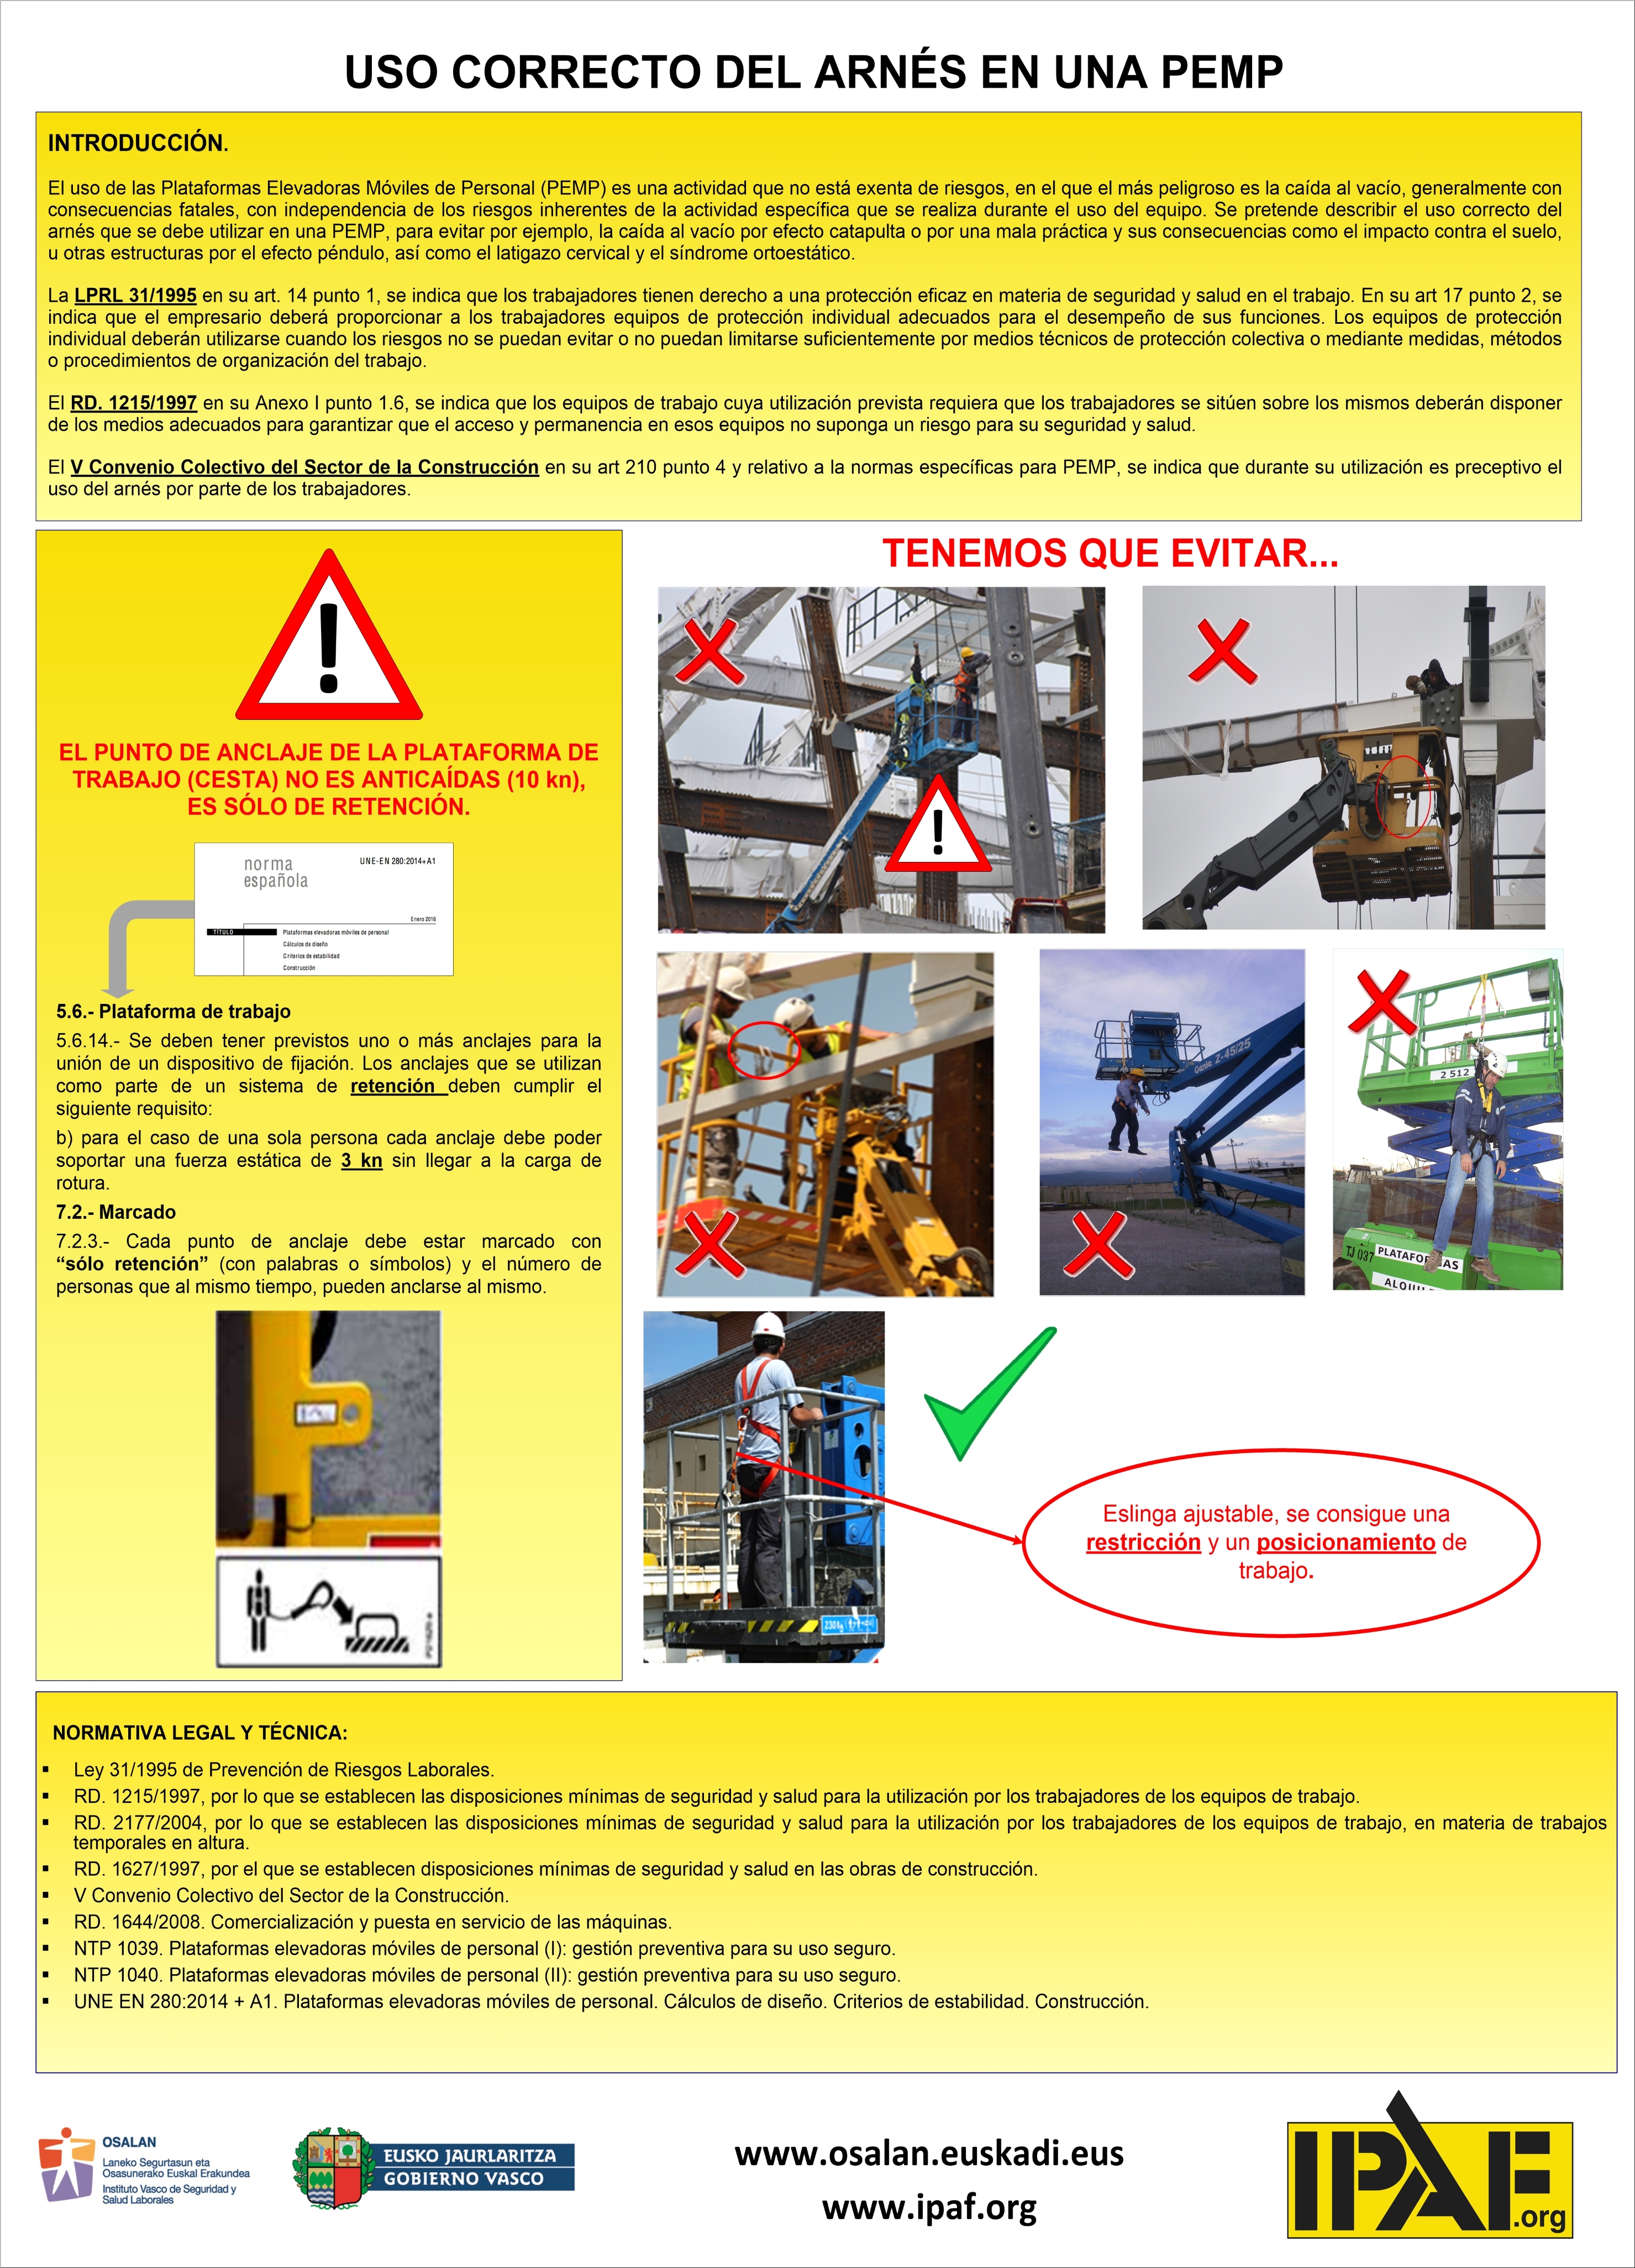 Requisitos de seguridad de las plataformas de trabajo.